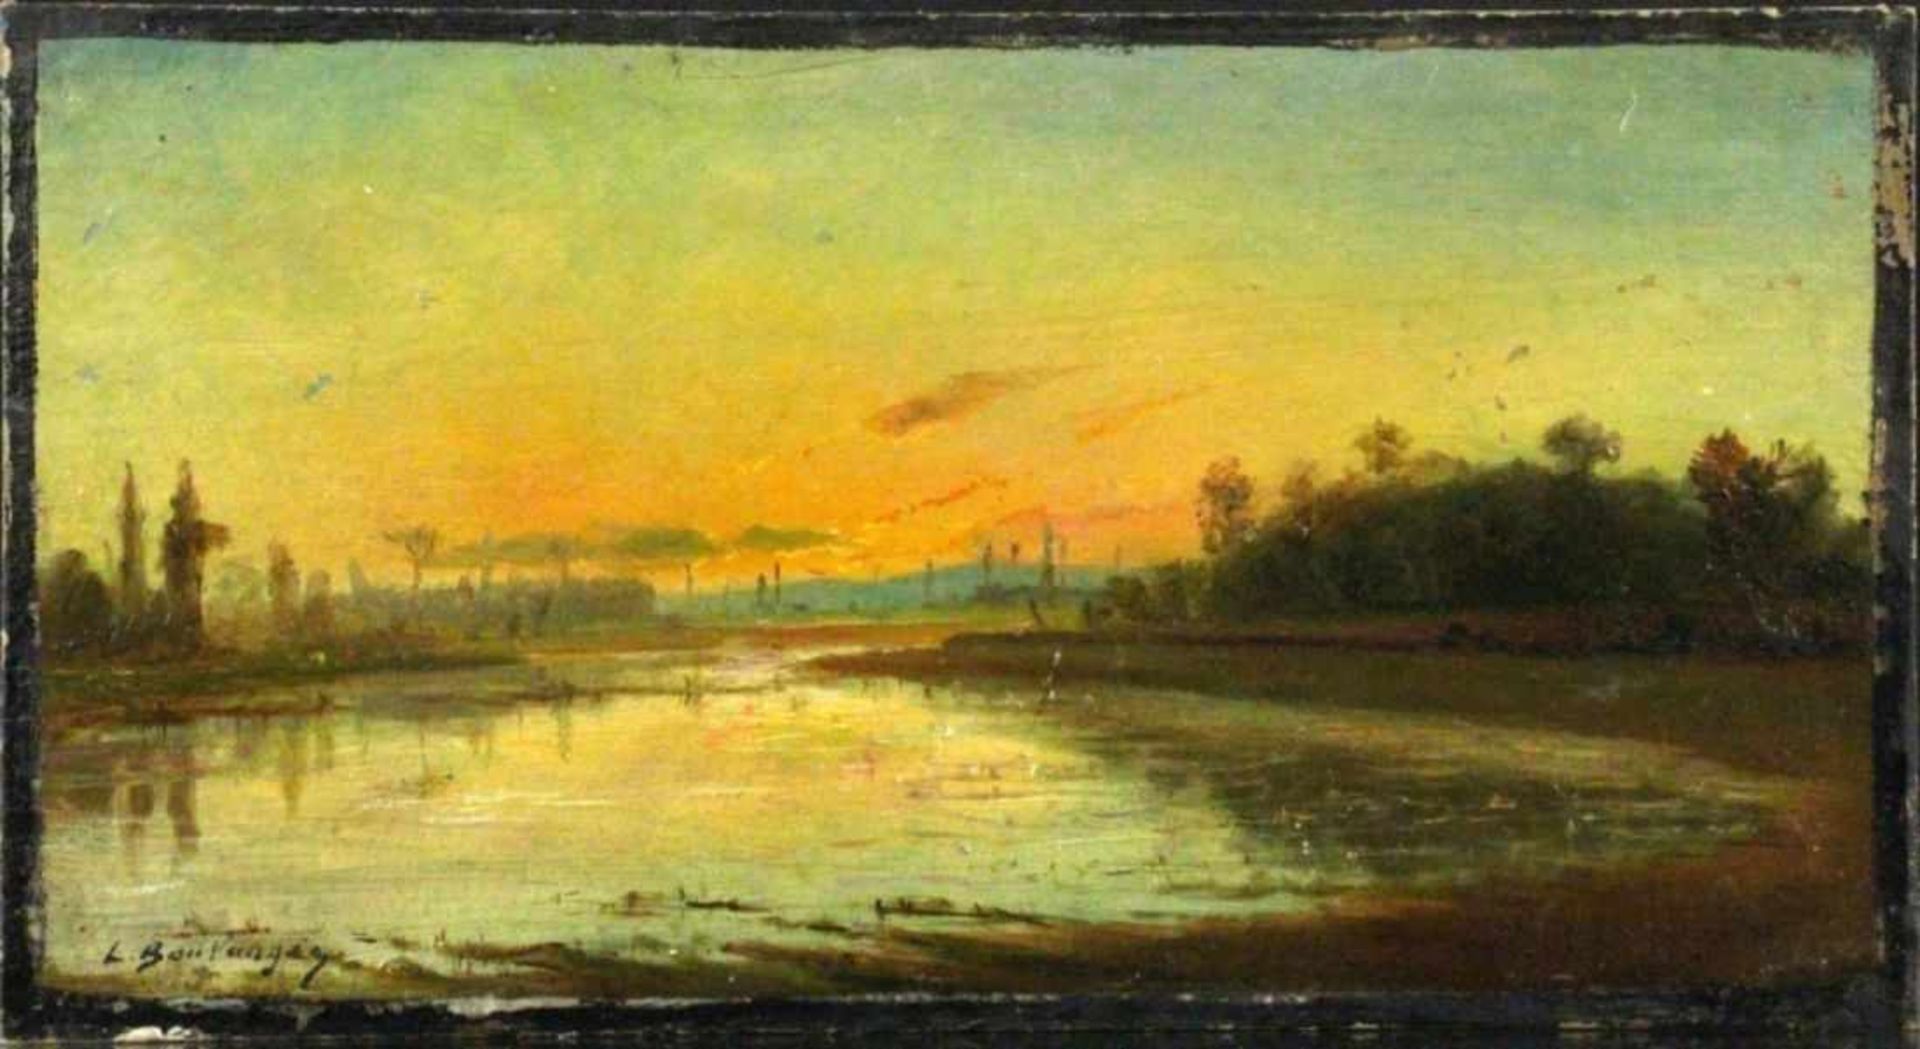 BOULANGER, LOUIS Vercelli 1806 - 1867 Dijon Seascape in the evening light. Oil on